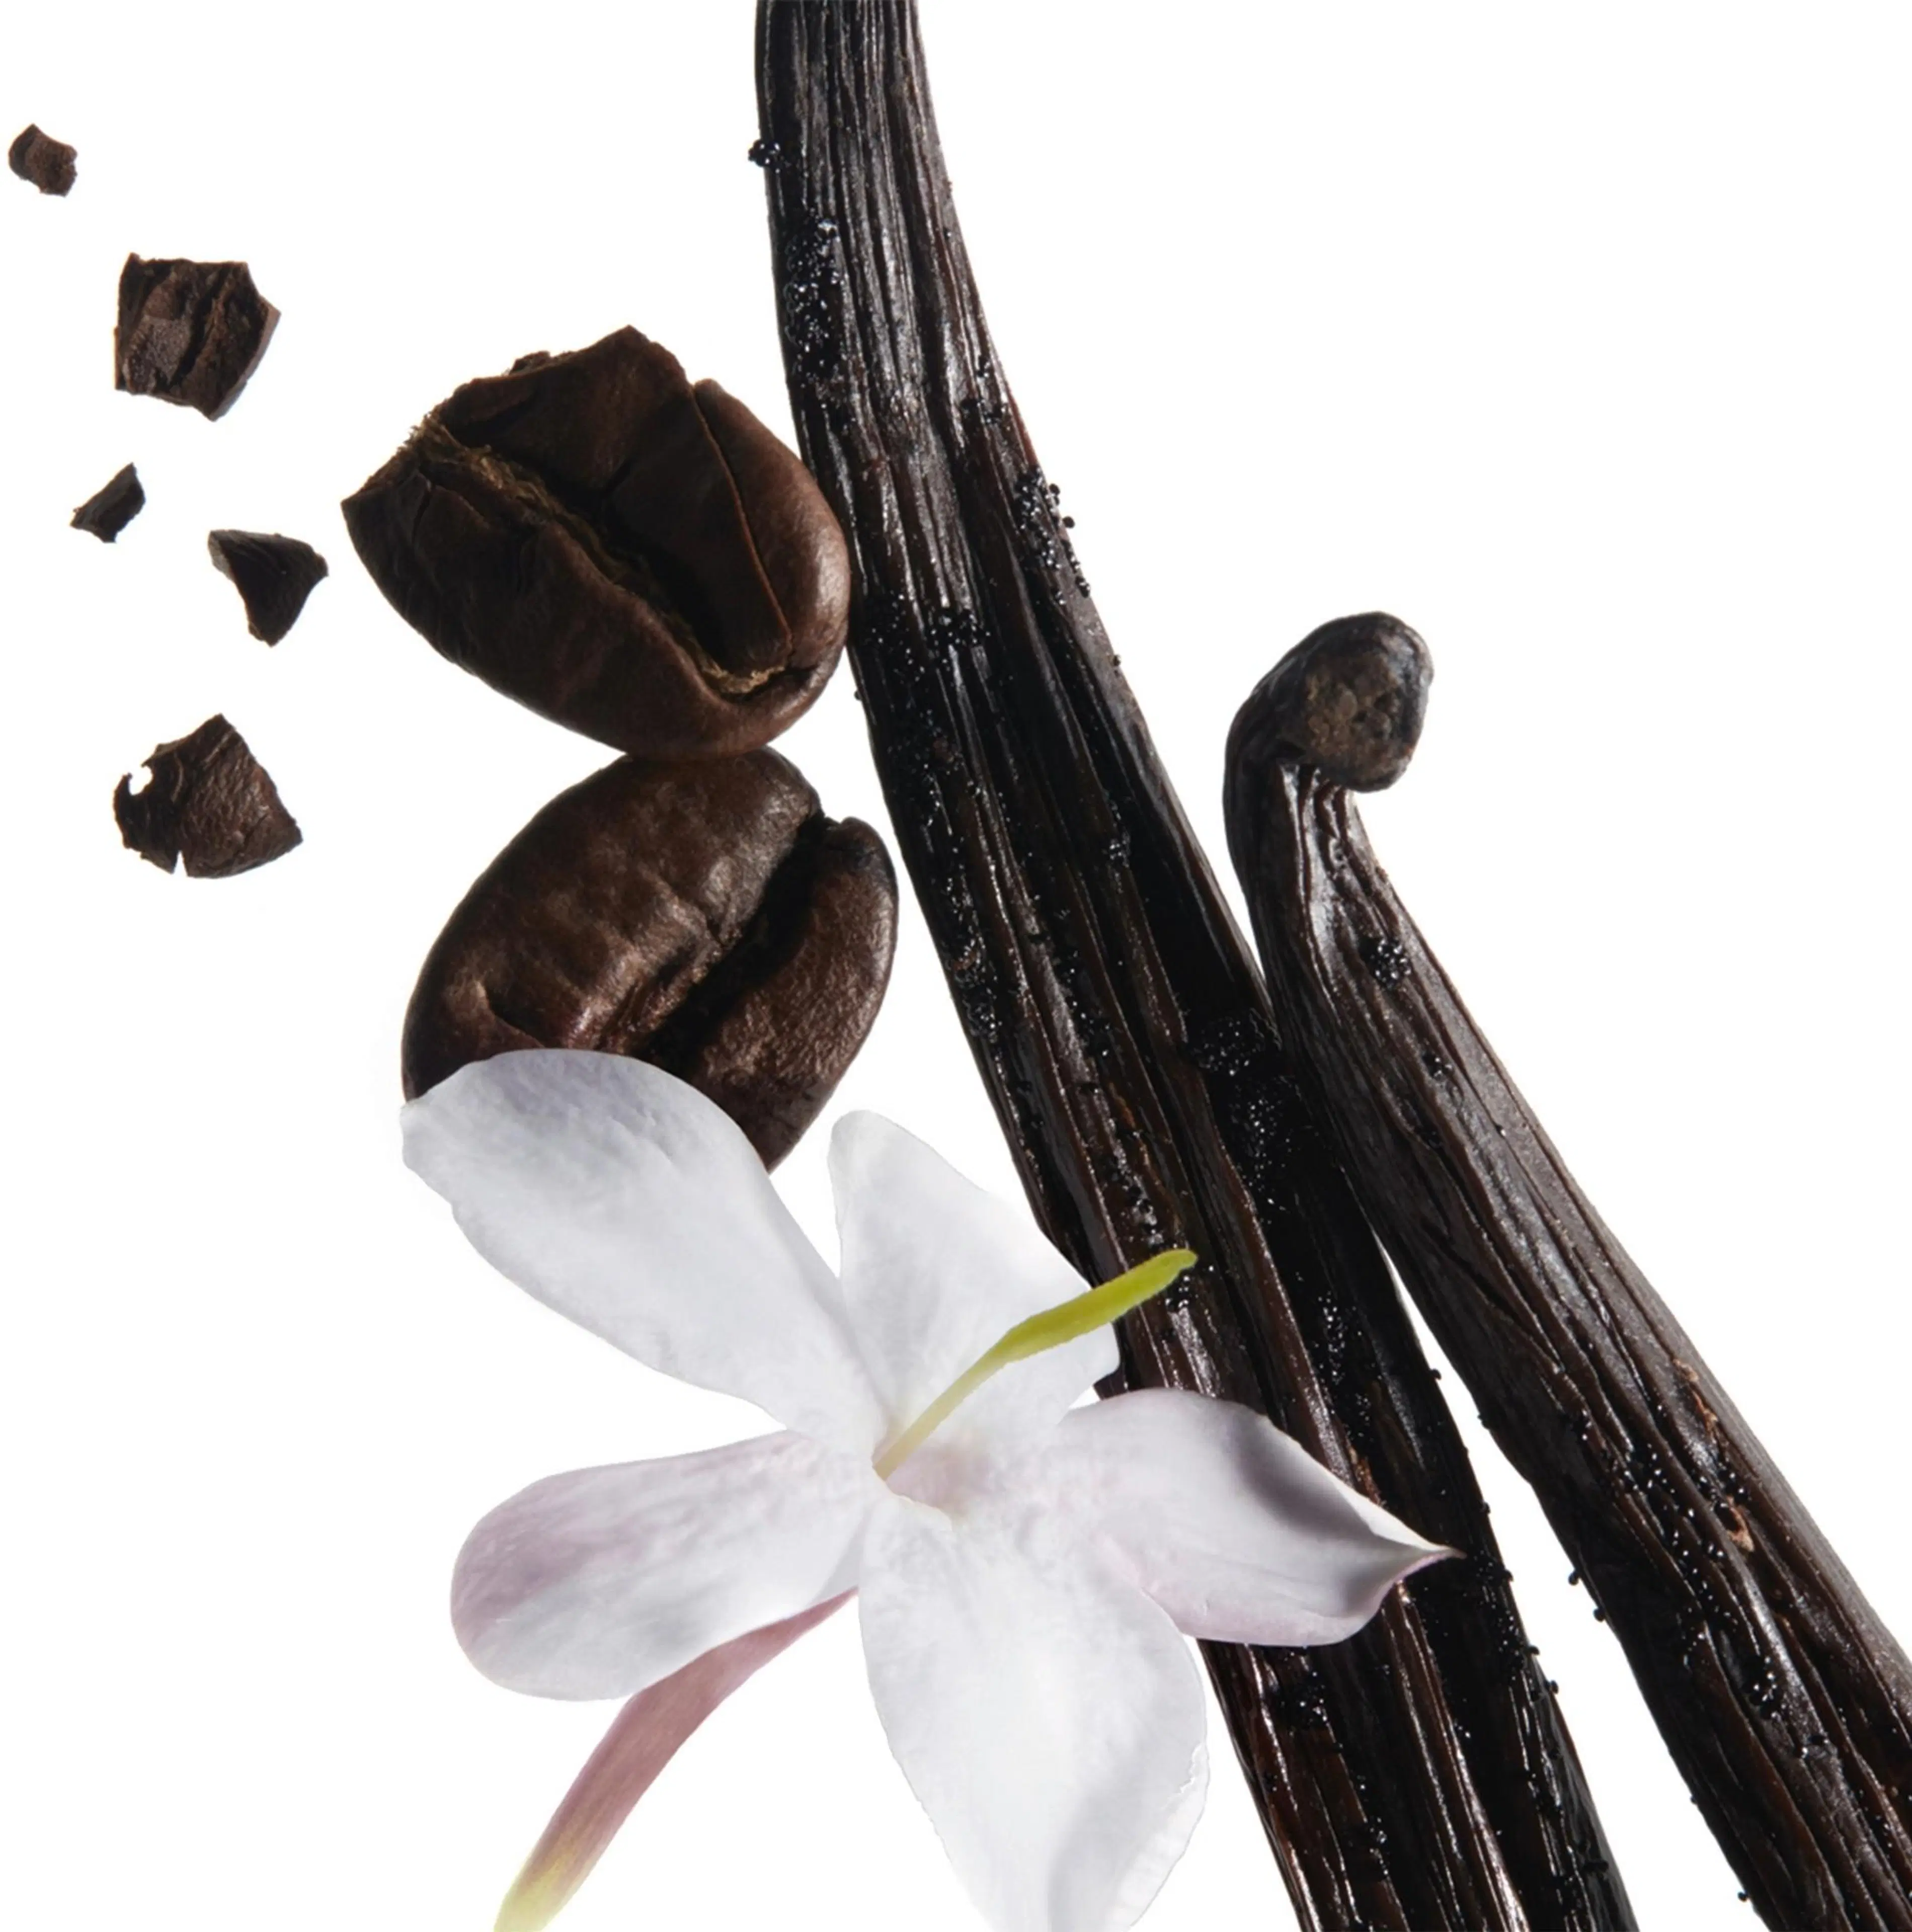 Yves Saint Laurent Black Opium Eau de Parfum Intense tuoksu 30 ml